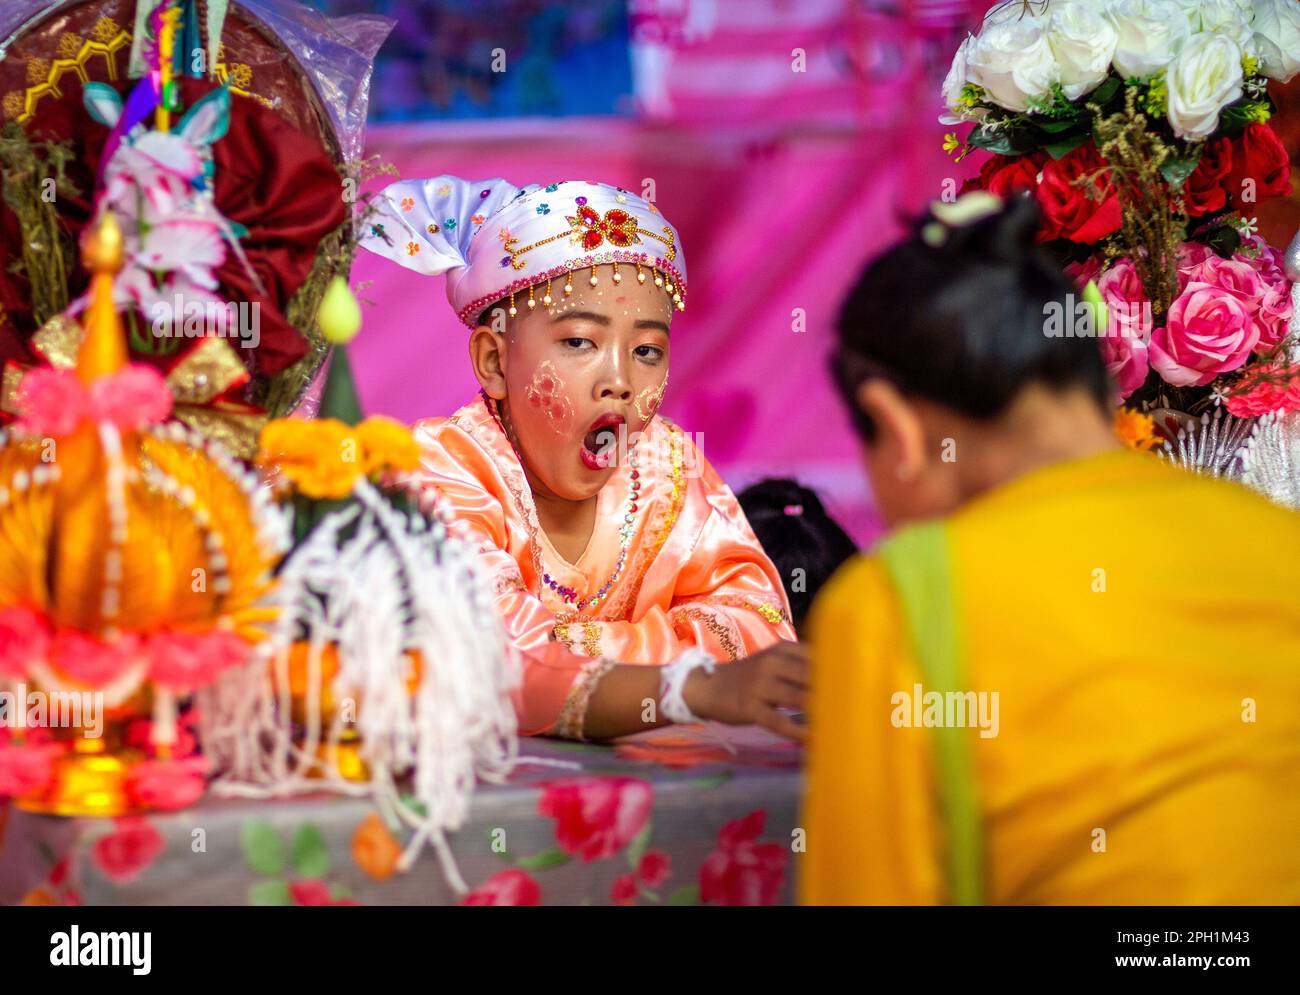 Un giovane ragazzo di etnia Shan vestito di costume colorato si sbadigia durante il festival POY Sang Long, una celebrazione di rito dell'ordinazione dei novizi buddisti al tempio di Wat Ku Tao. POY Sang Long è una cerimonia di ordinazione dei novizi buddisti tra il popolo Shan chiamato anche tribale Tai Yai in Myanmar e nella parte settentrionale della Thailandia, ma a differenza di qualsiasi altra cerimonia del suo tipo nel paese. I ragazzi di età compresa tra i sette e i 14 anni, noti come "figli di Cristallo", saranno ordinati novizi per imparare le dottrine buddiste per guadagnare meriti ai loro genitori e alle loro famiglie. Foto Stock